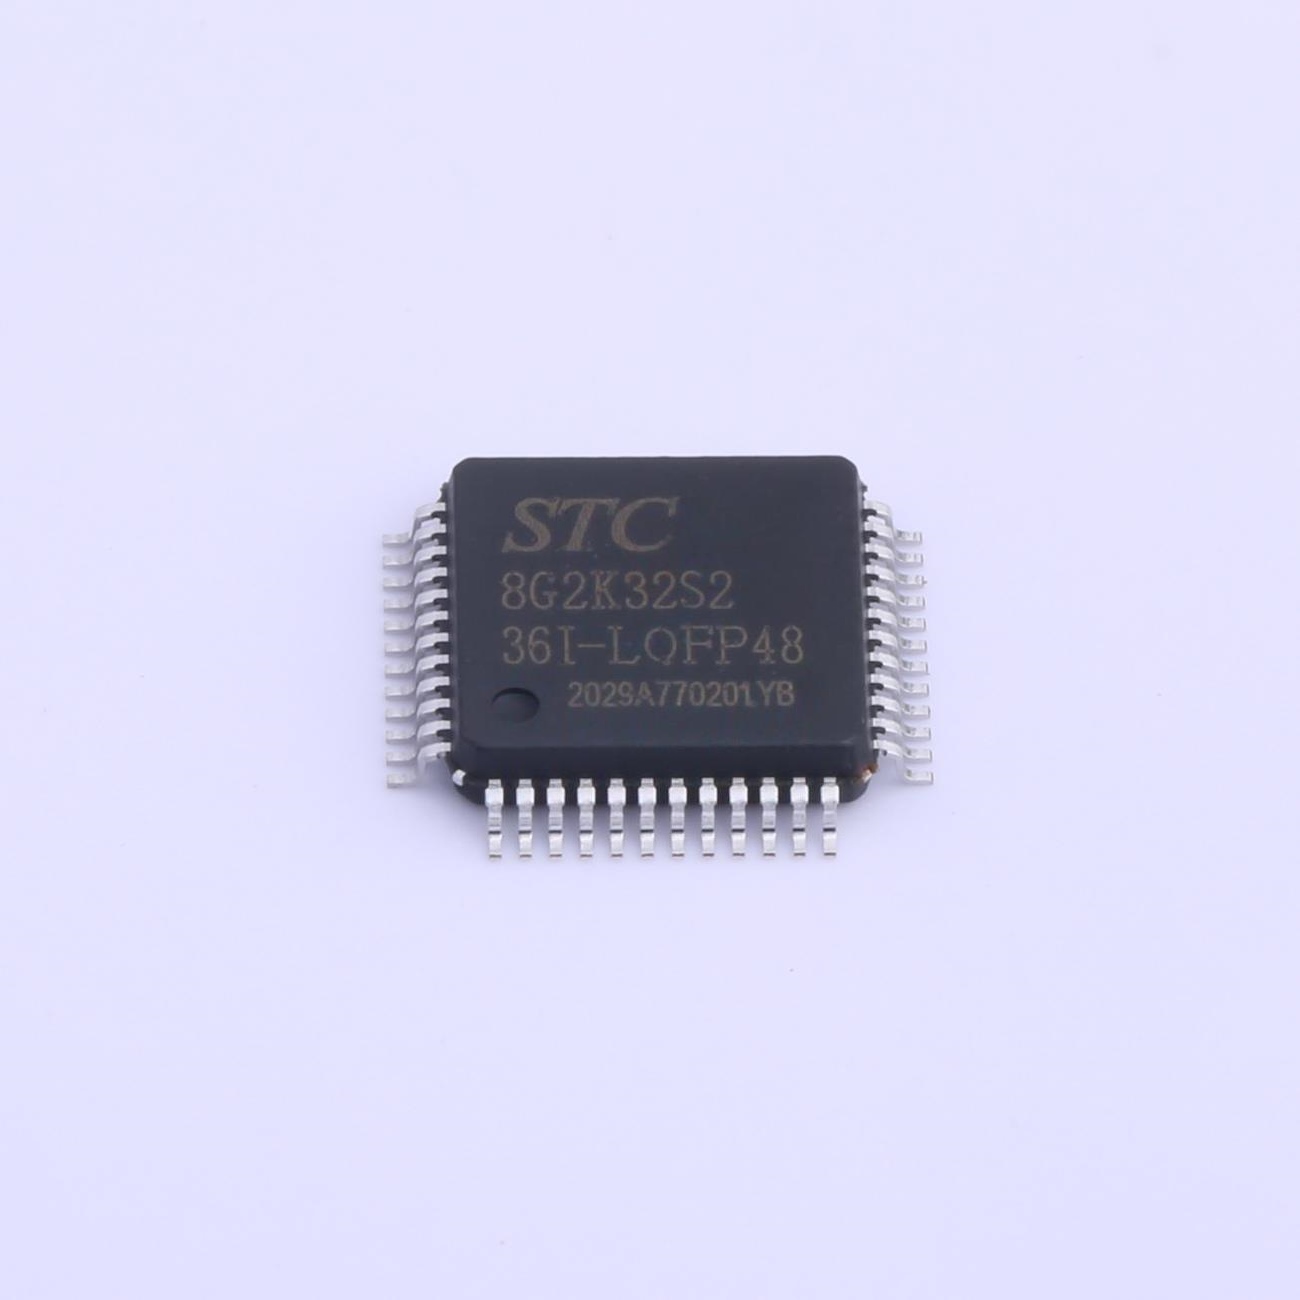 STC8G2K32S2-36I-LQFP48